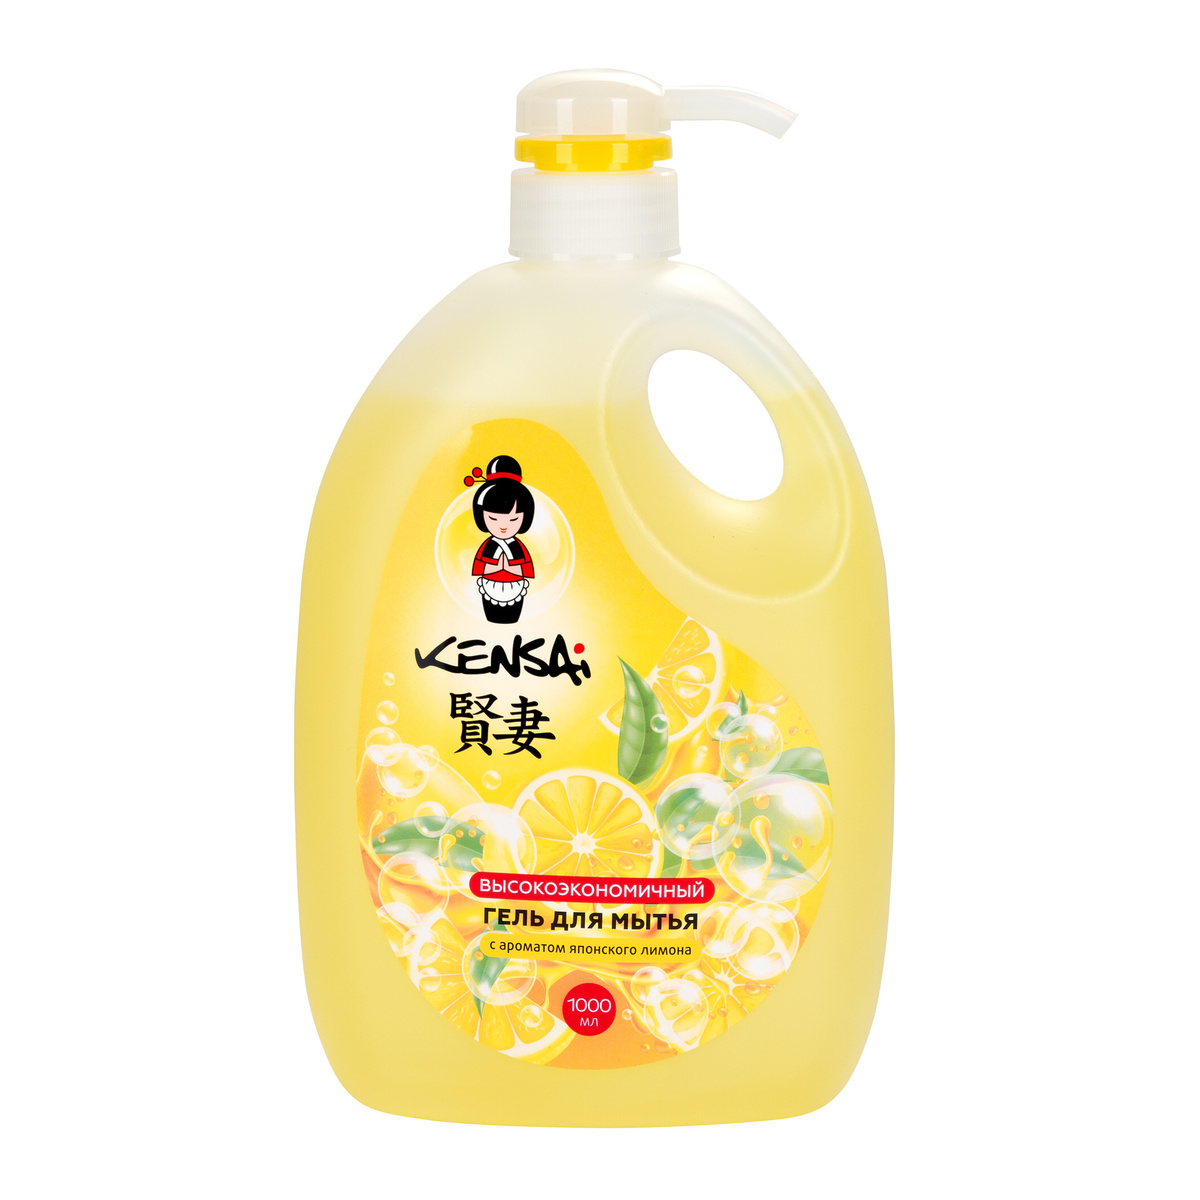 Гель для мытья посуды и дестких принадлежностей KENSAI, японский лимон, 1л - дополнительное фото